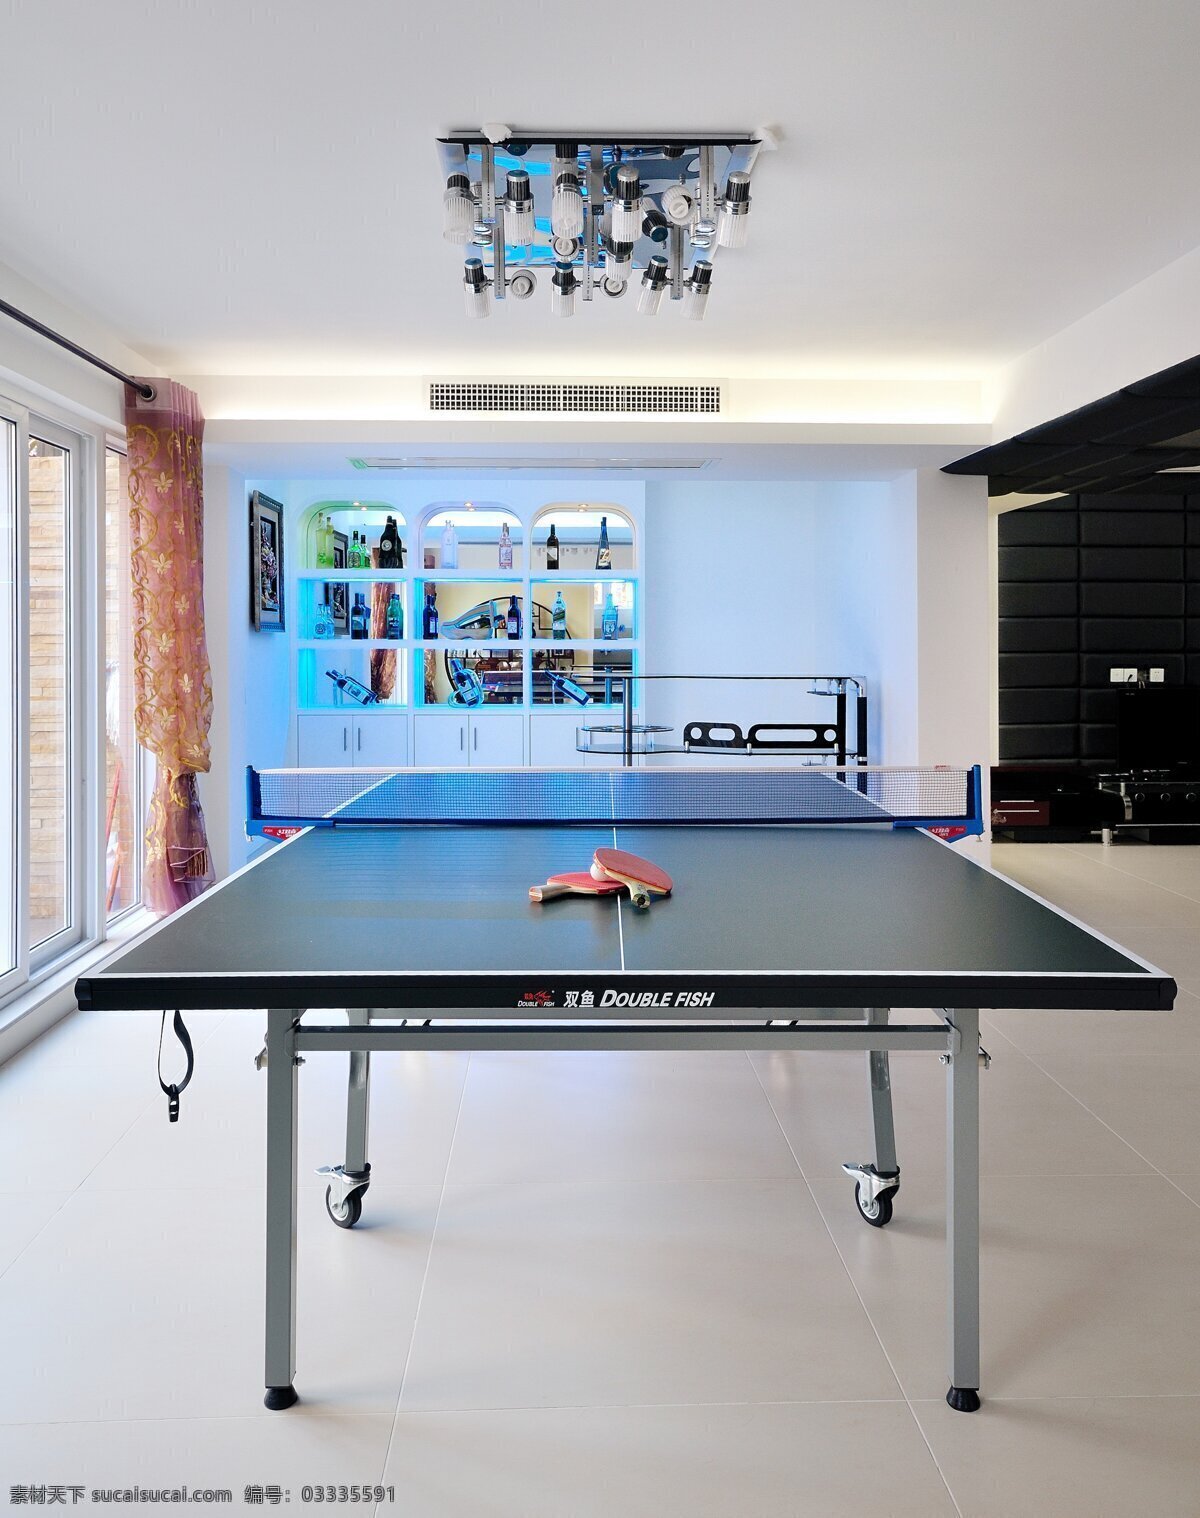 欧式 室内 休闲 乒乓球桌 设计图 家居 家居生活 室内设计 装修 家具 装修设计 环境设计 效果图